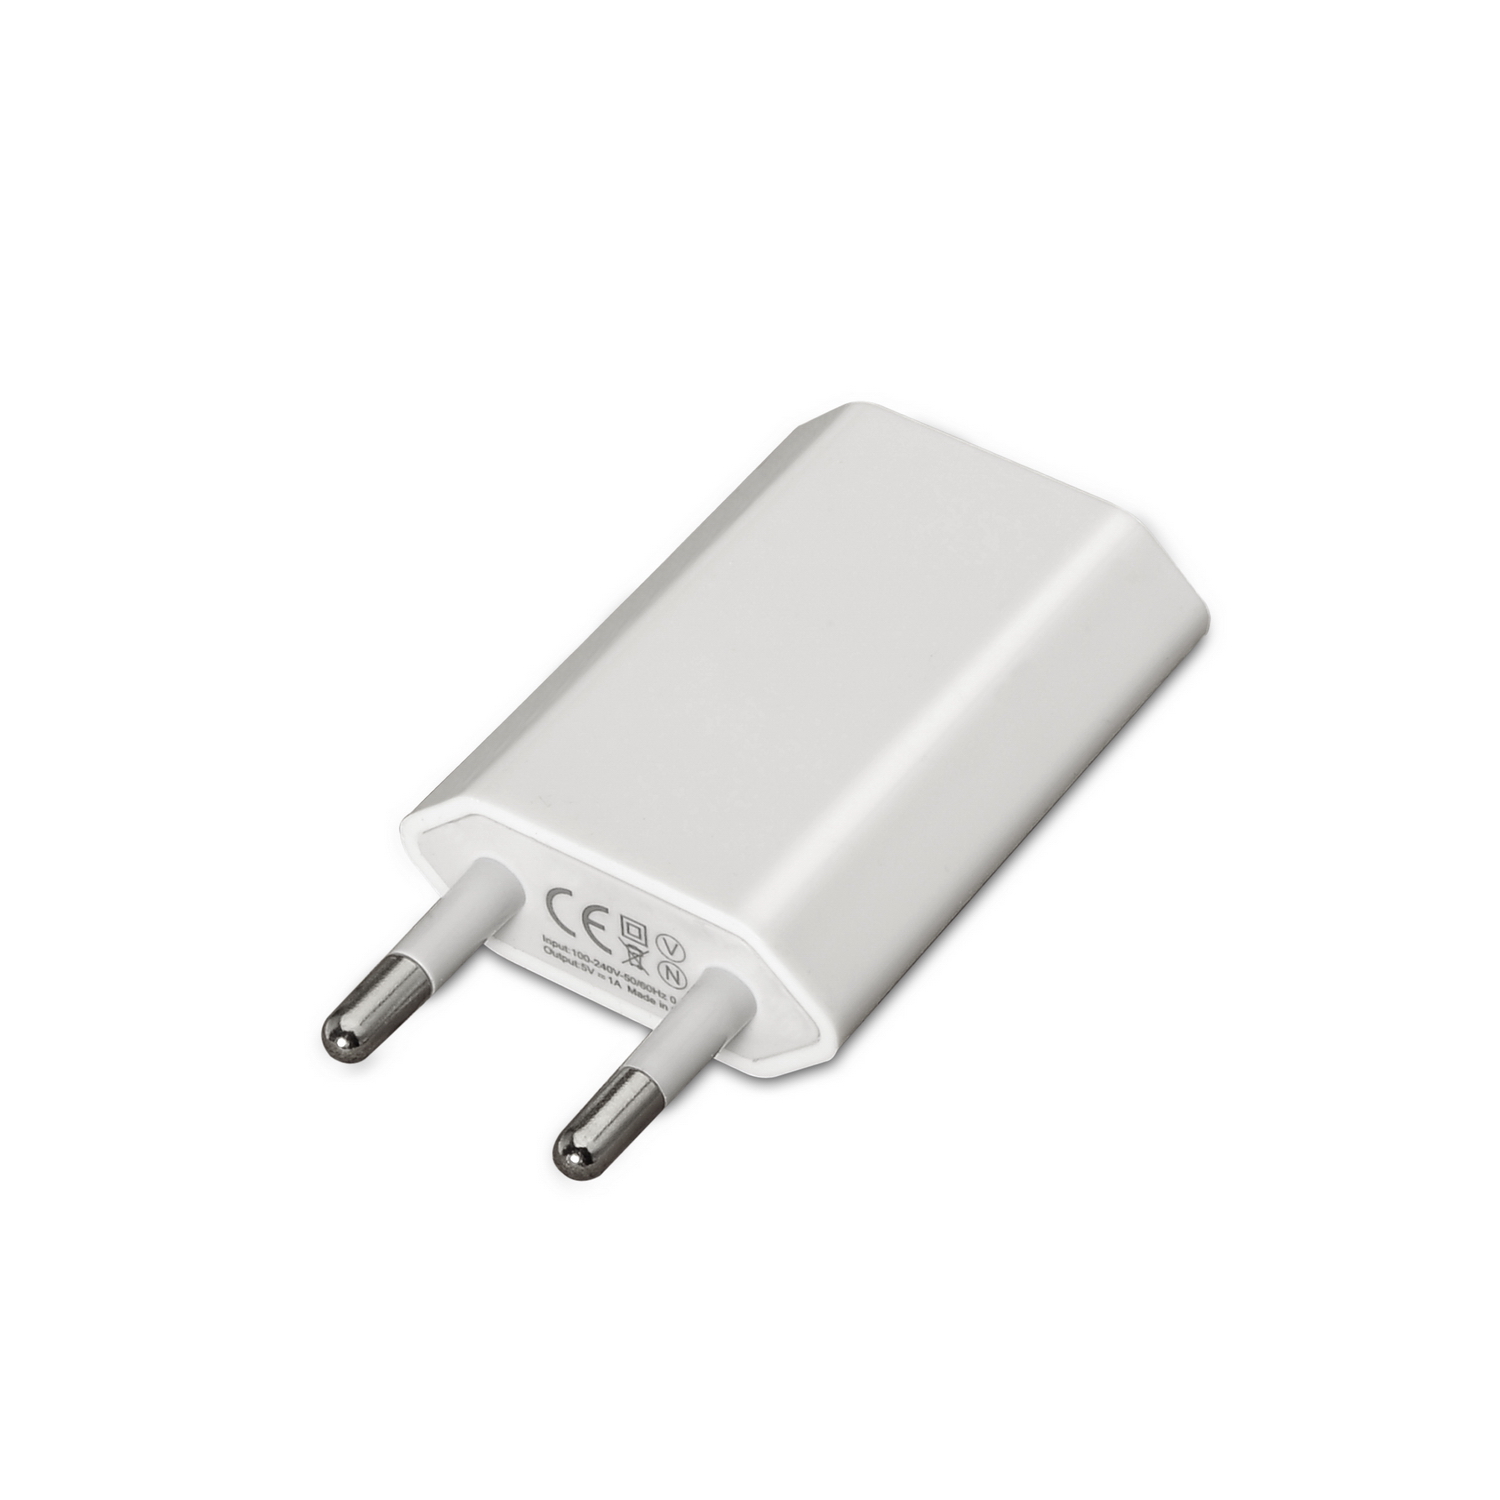 Chargeur Mini USB Aisens - 5V/1A - Couleur Blanche